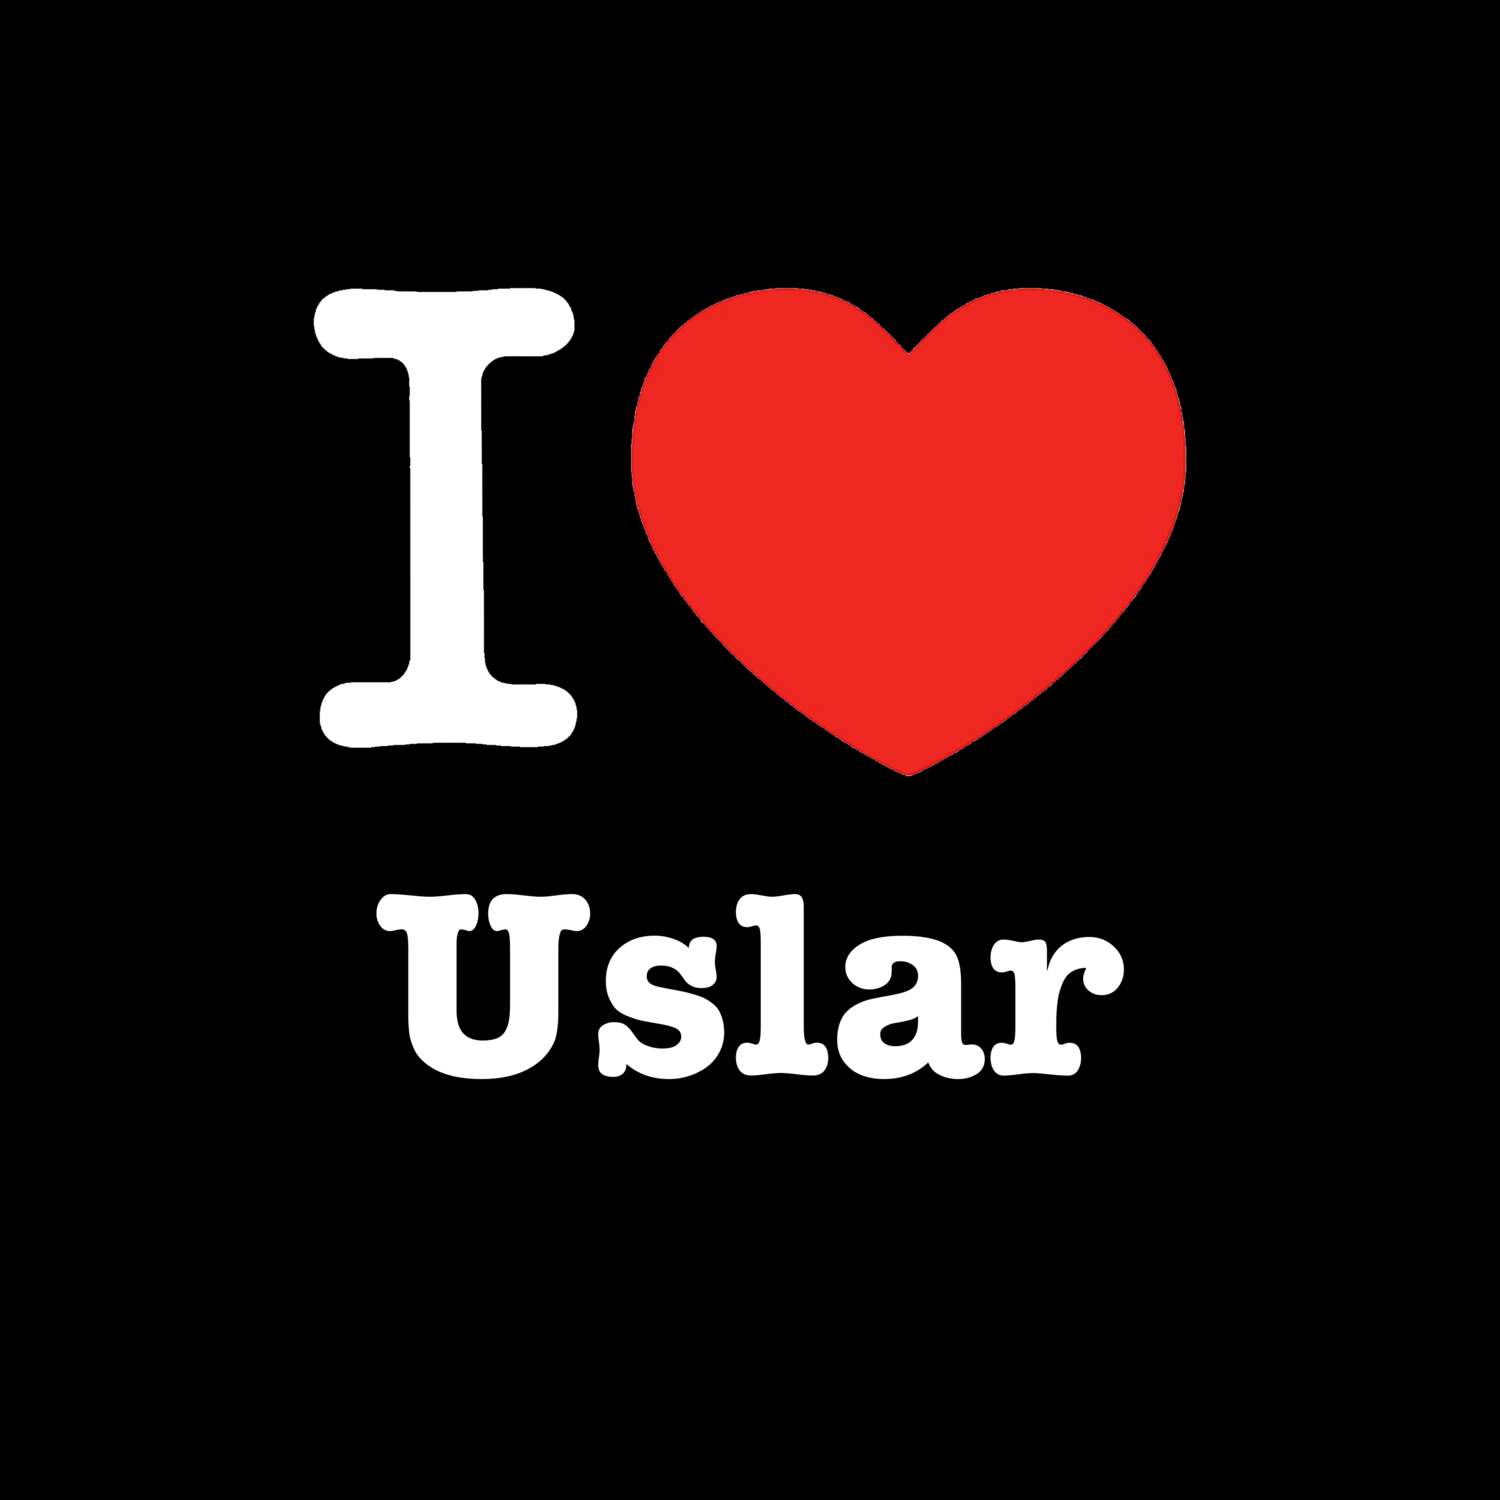 Uslar T-Shirt »I love«